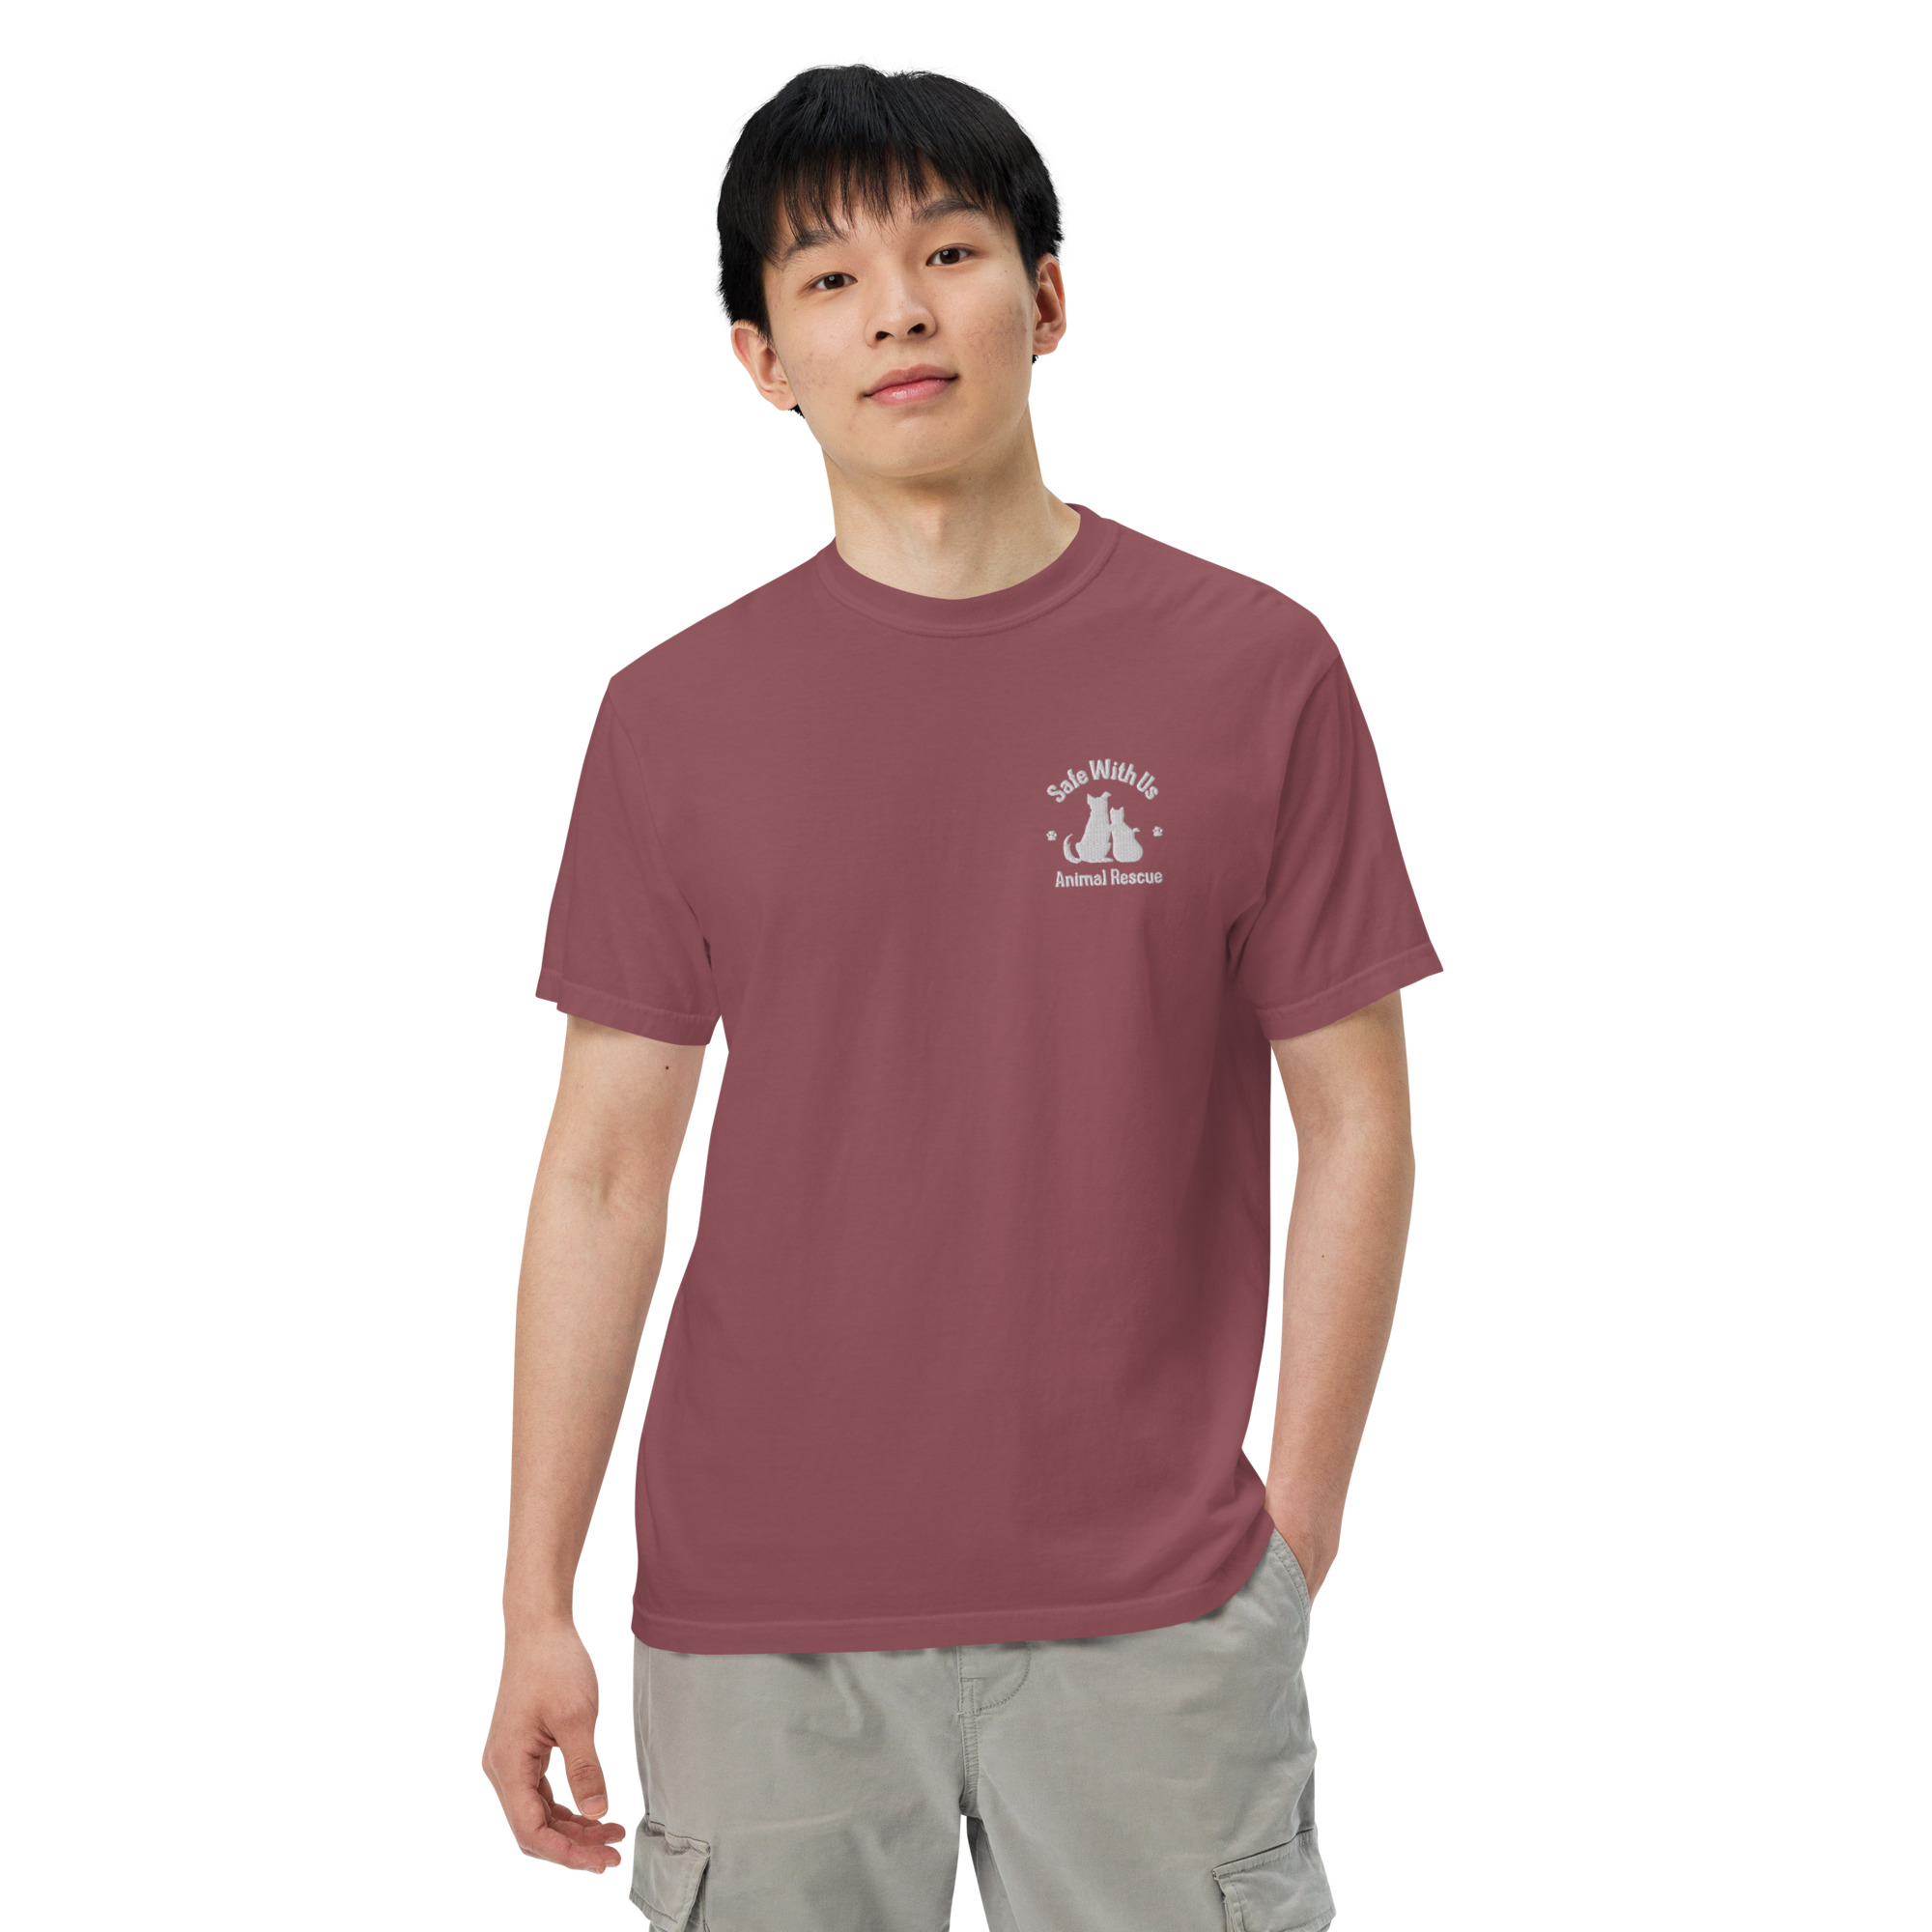 mens-garment-dyed-heavyweight-t-shirt-brick-front-2-6415fedc266d3.jpg